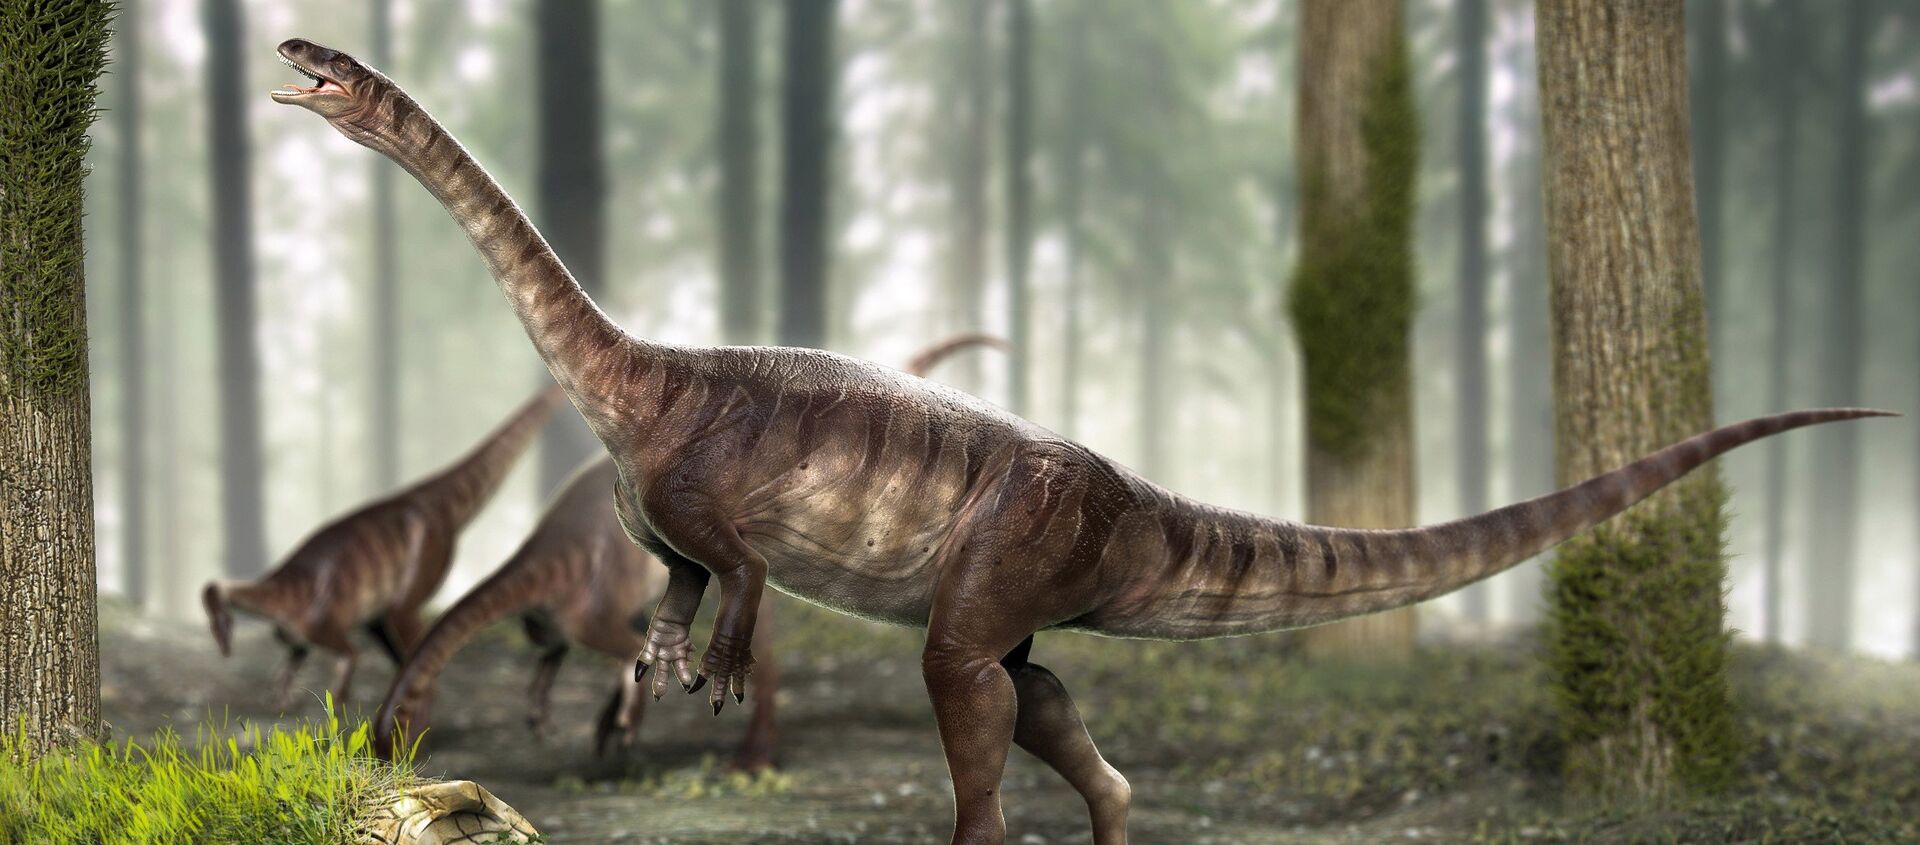 Dinossauro de pescoço longo mais antigo do mundo é achado no Brasil - Sputnik Brasil, 1920, 11.08.2021